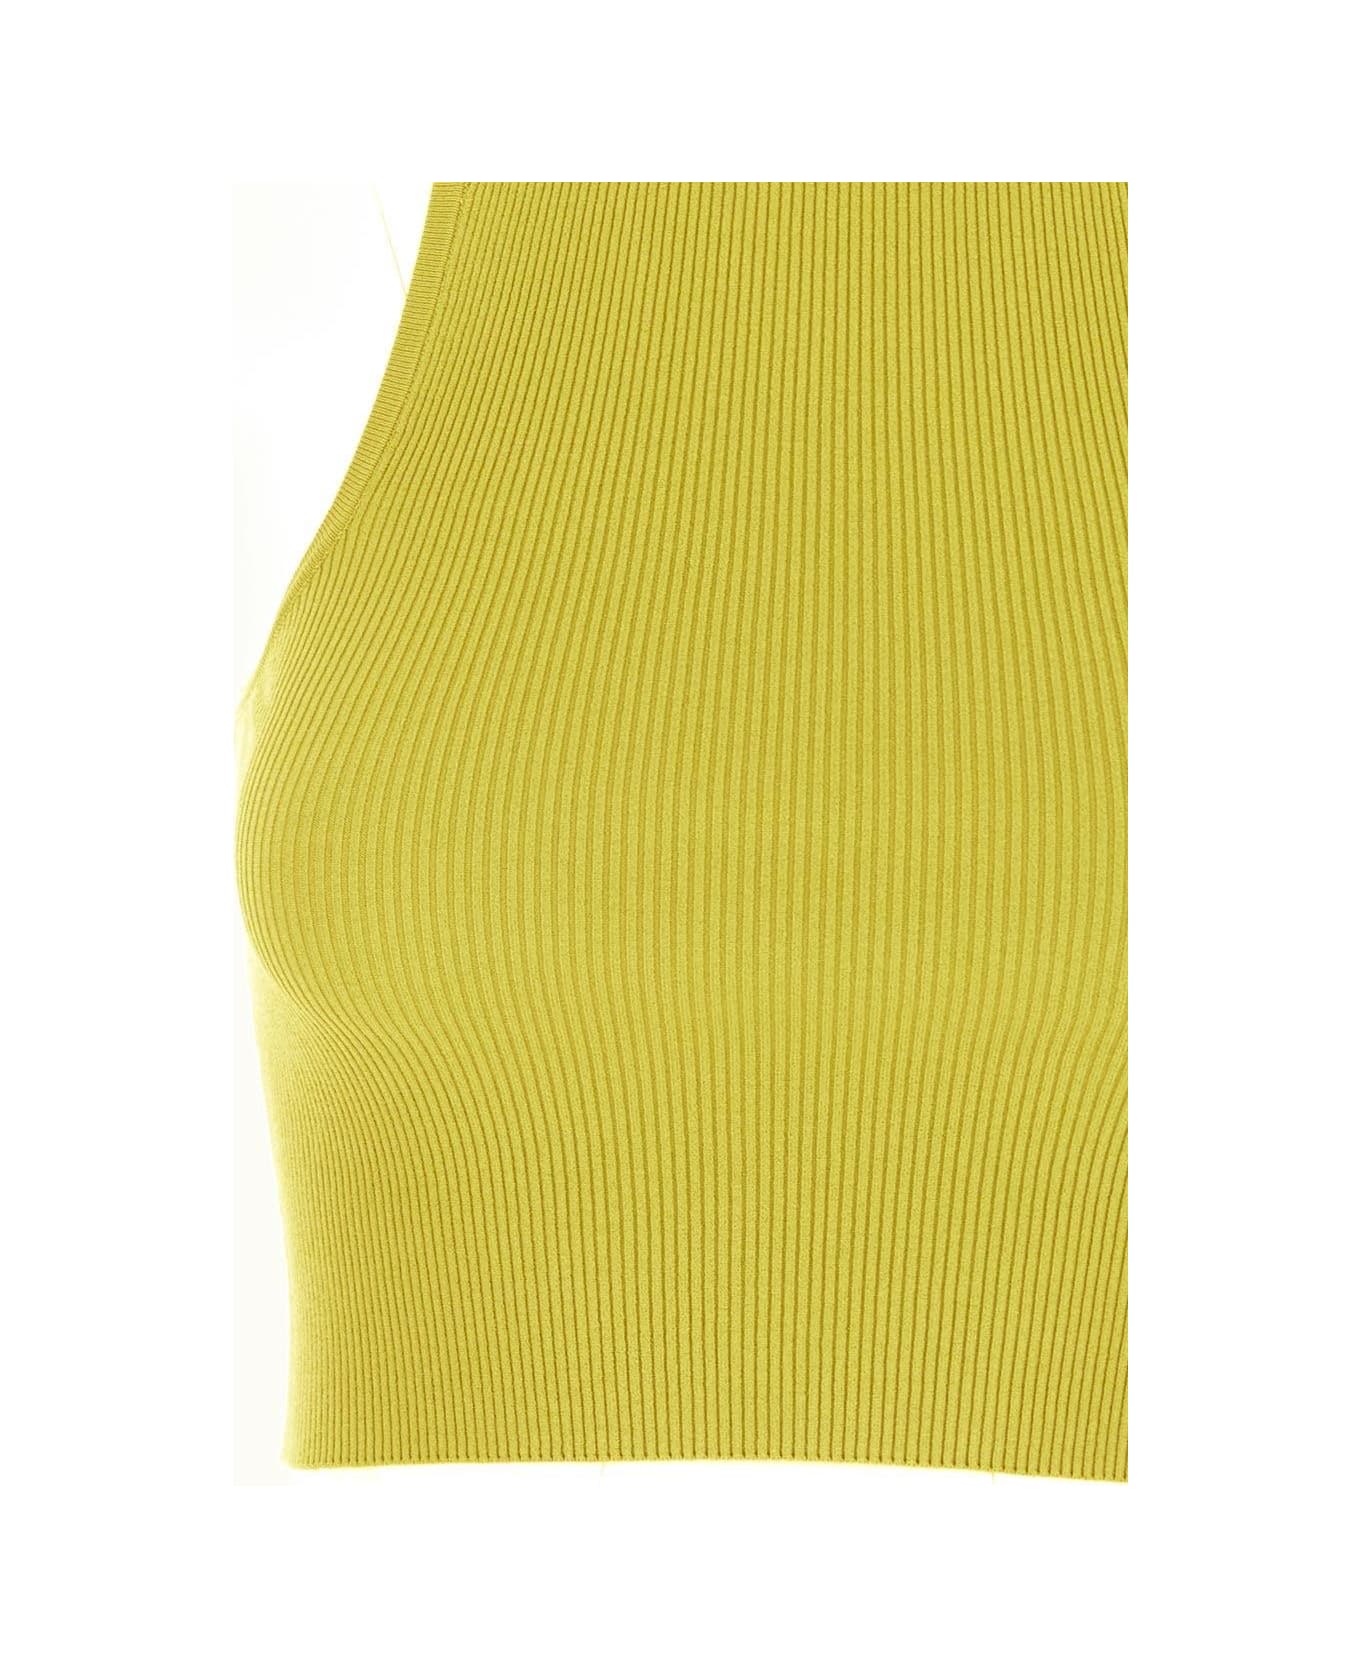 Max Mara Turku Knit Top - Yellow